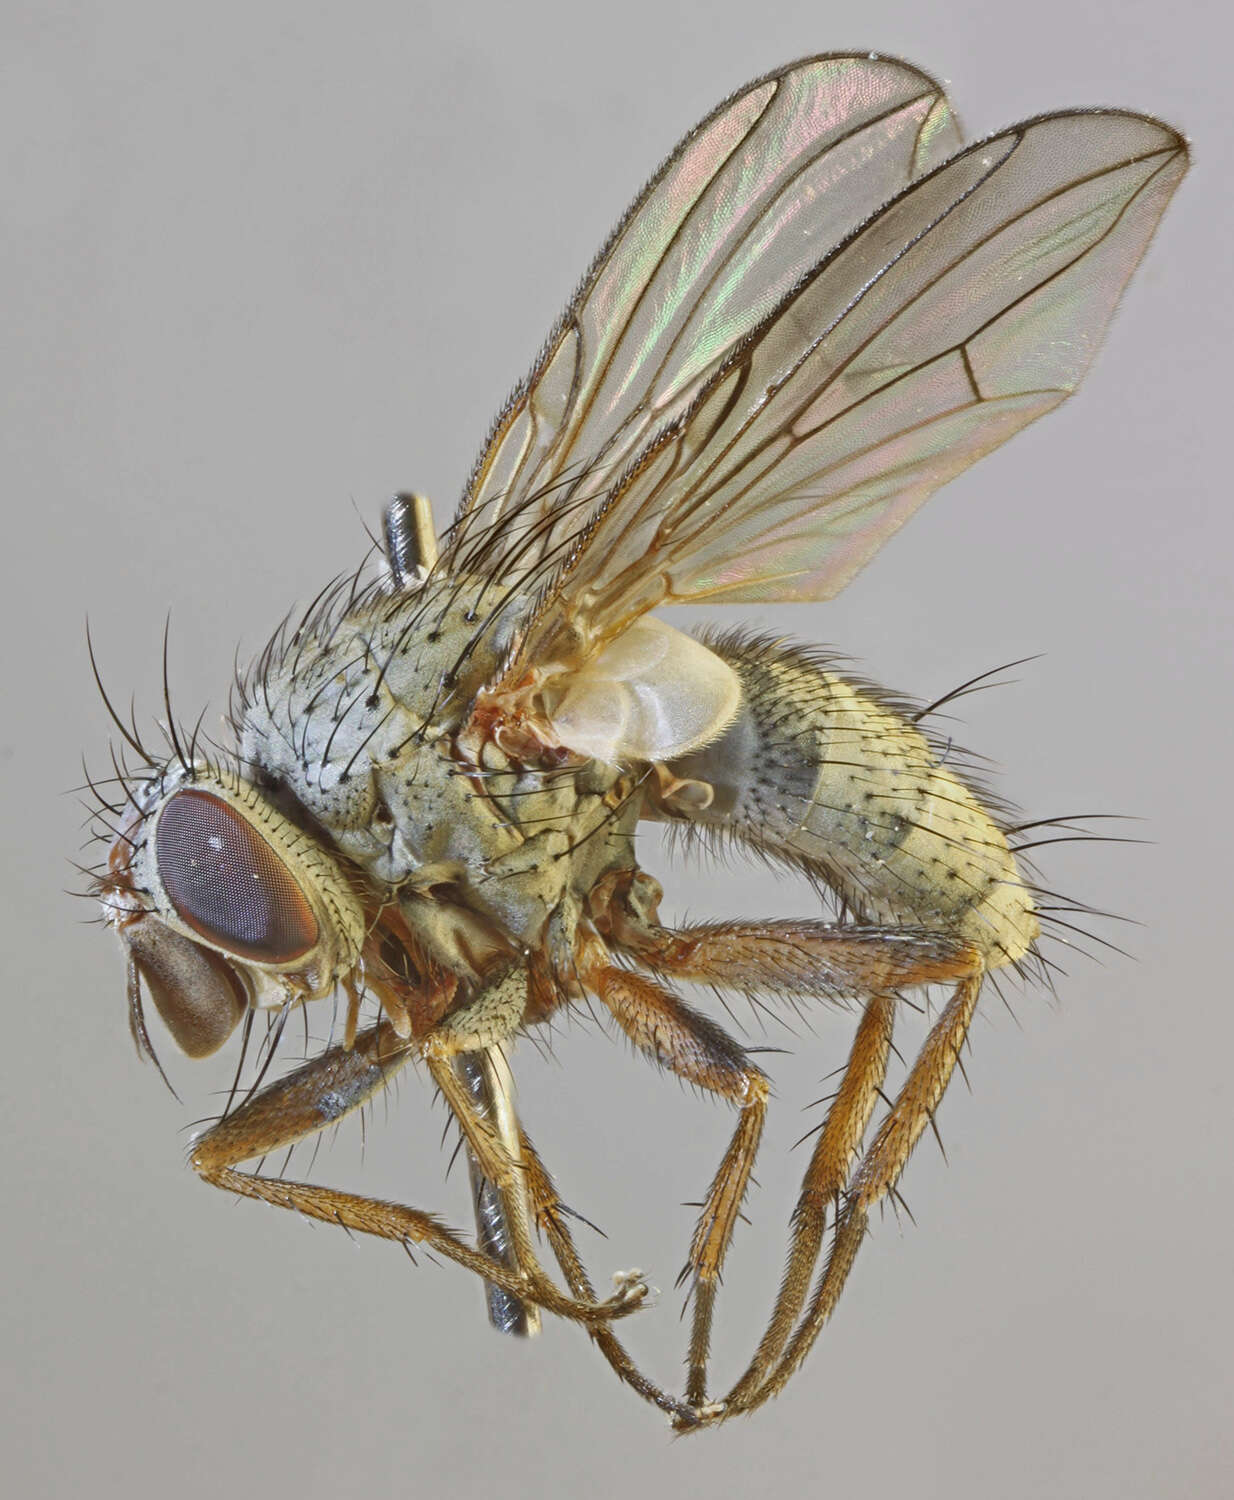 Image of Entomophaga